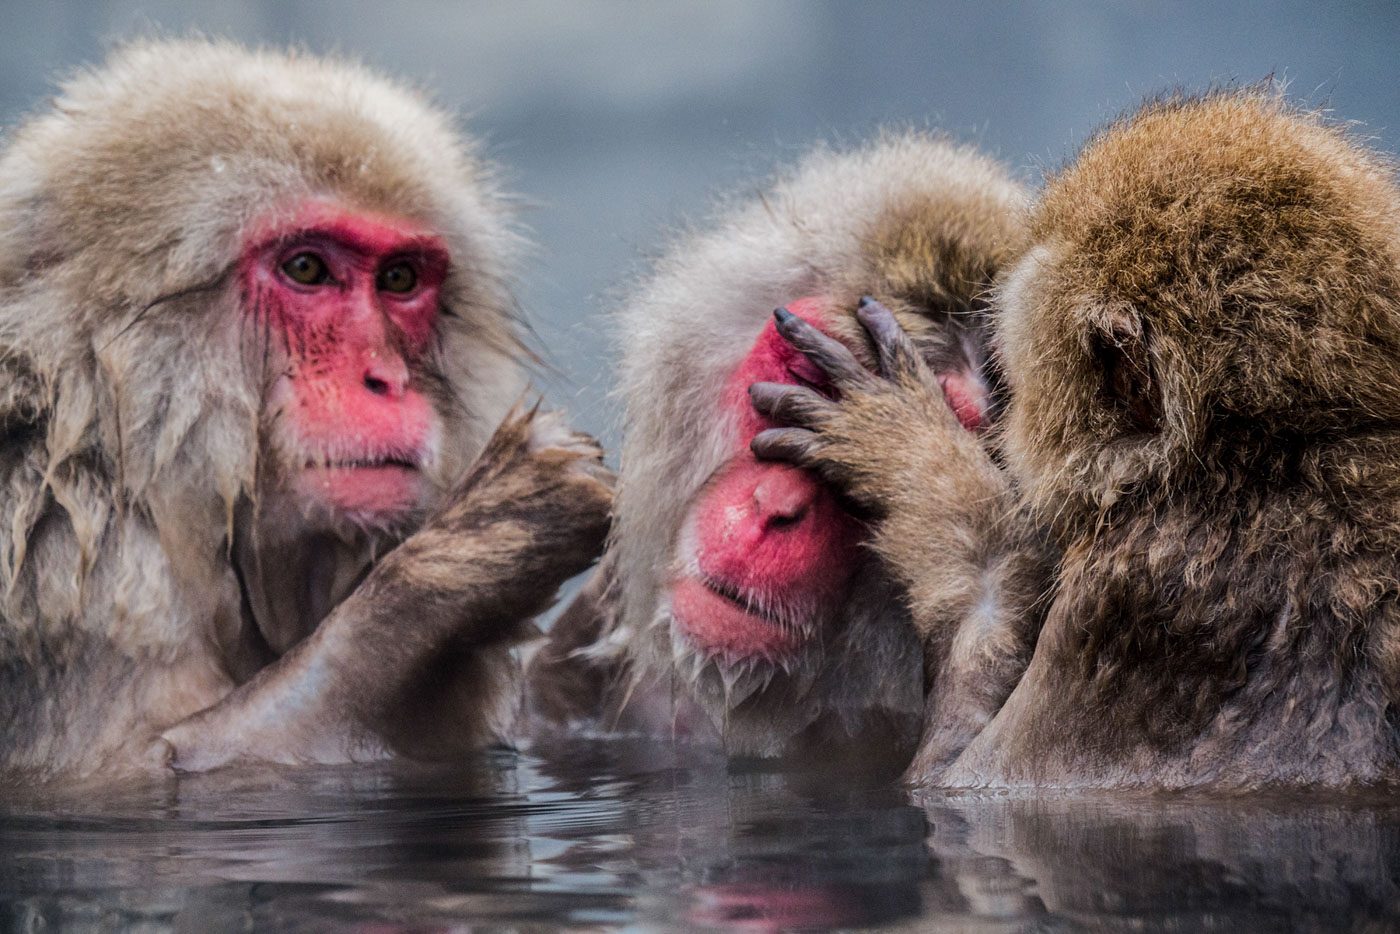 THE 3 BUDDIES. The Snow Monkeys of Nagano, taken by Manette Benitez 